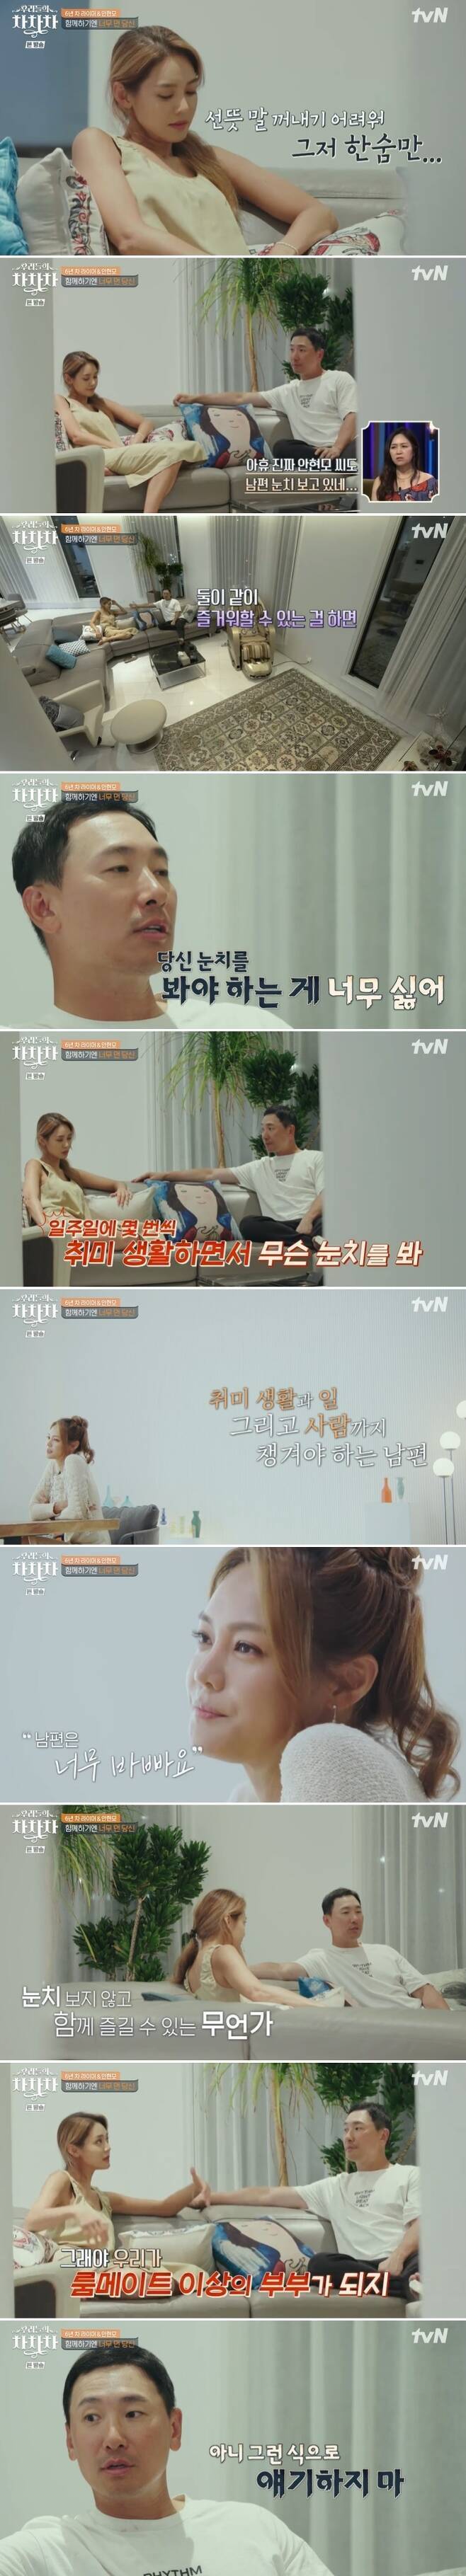 tvN ‘우리들의 차차차’ 캡처